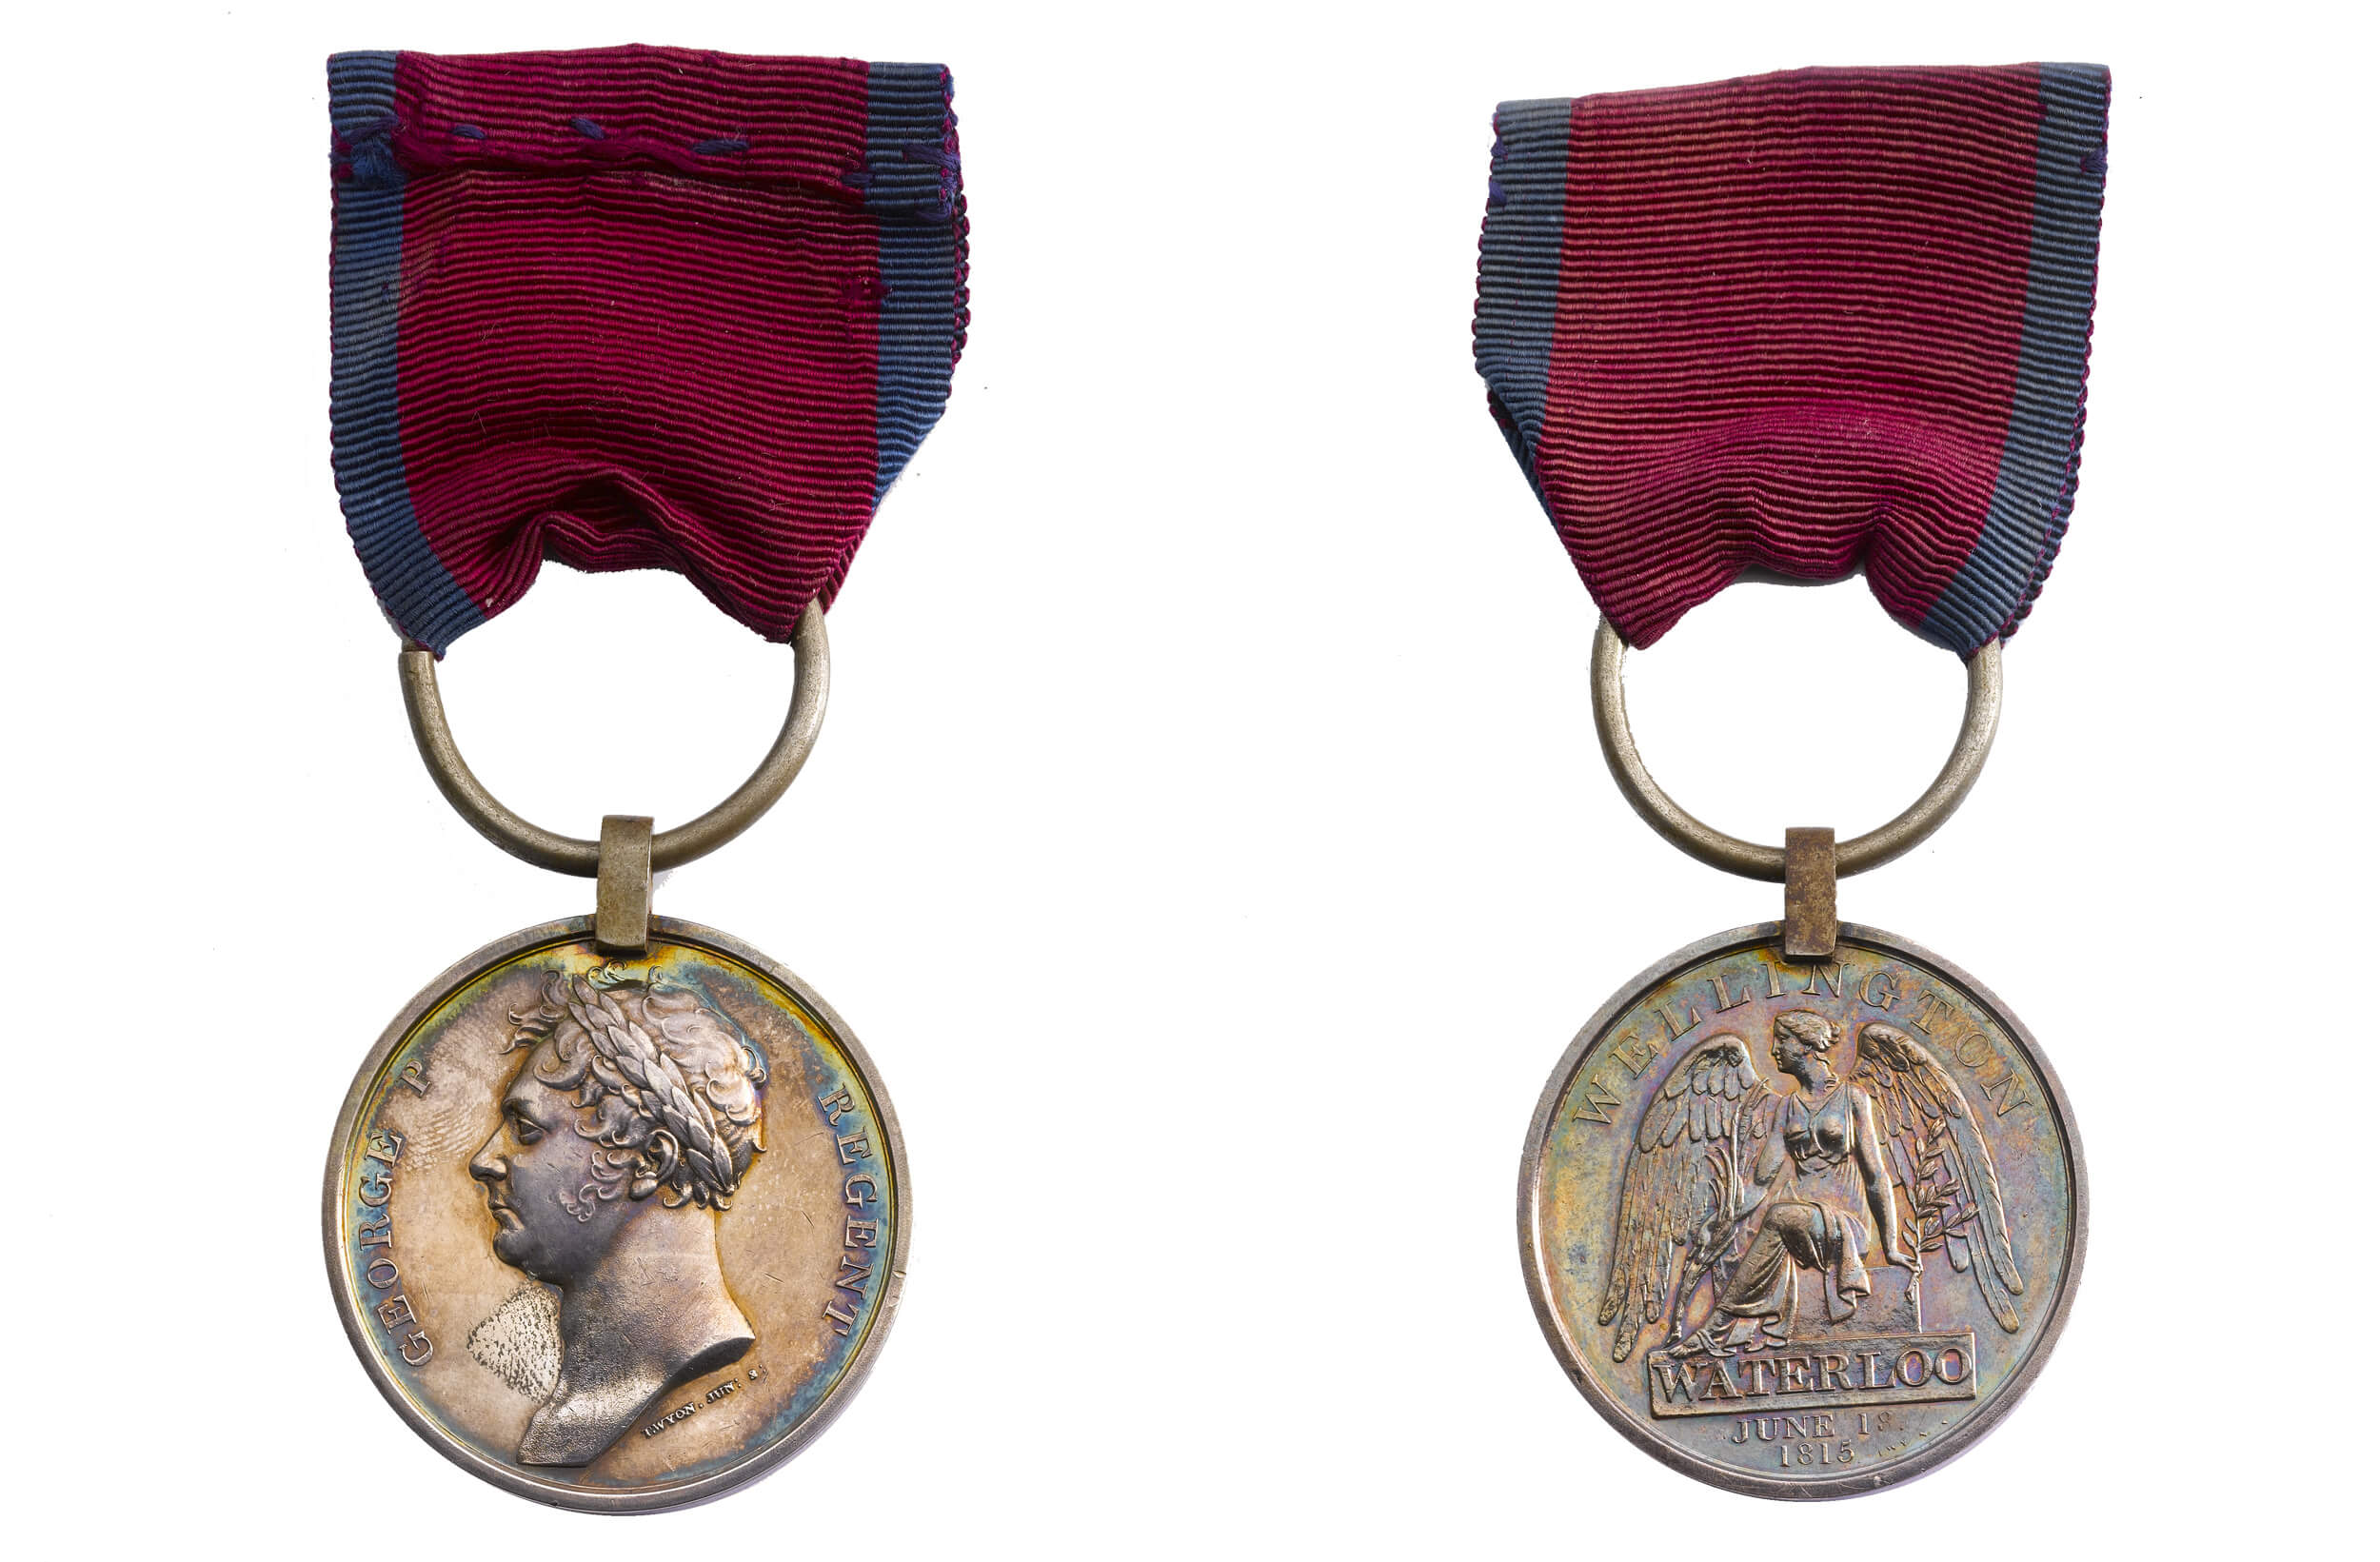 Waterloo medal2.jpg